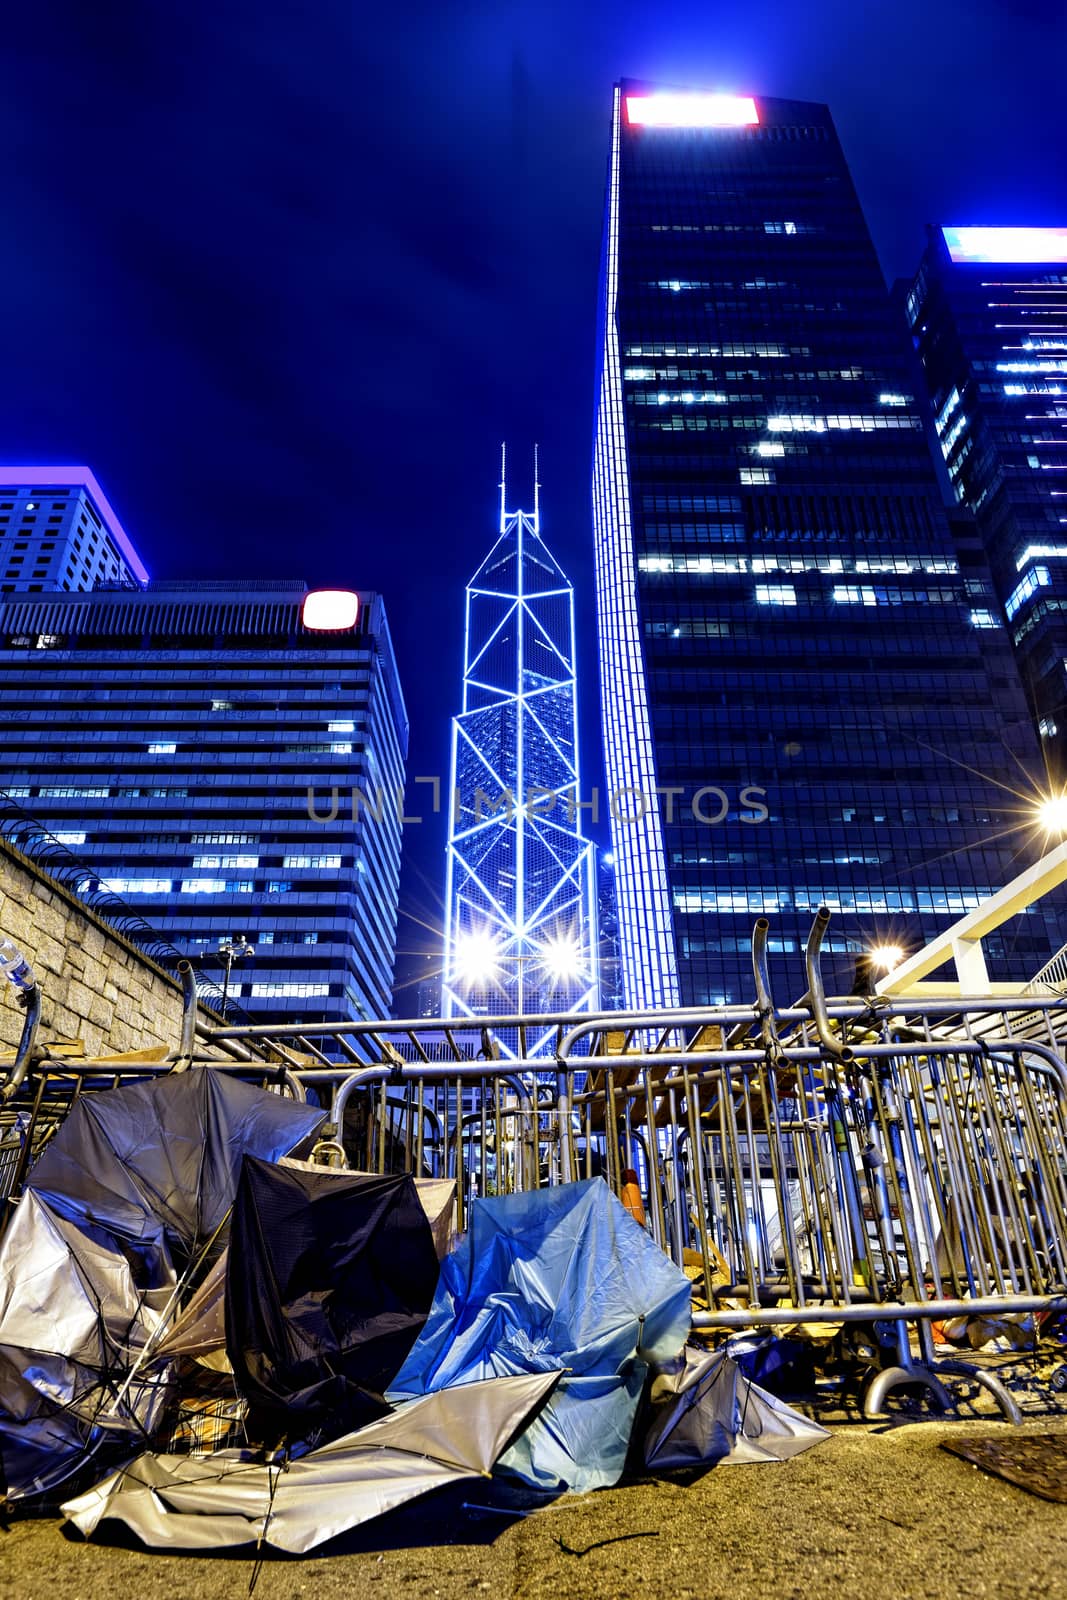 Occupy Central by cozyta